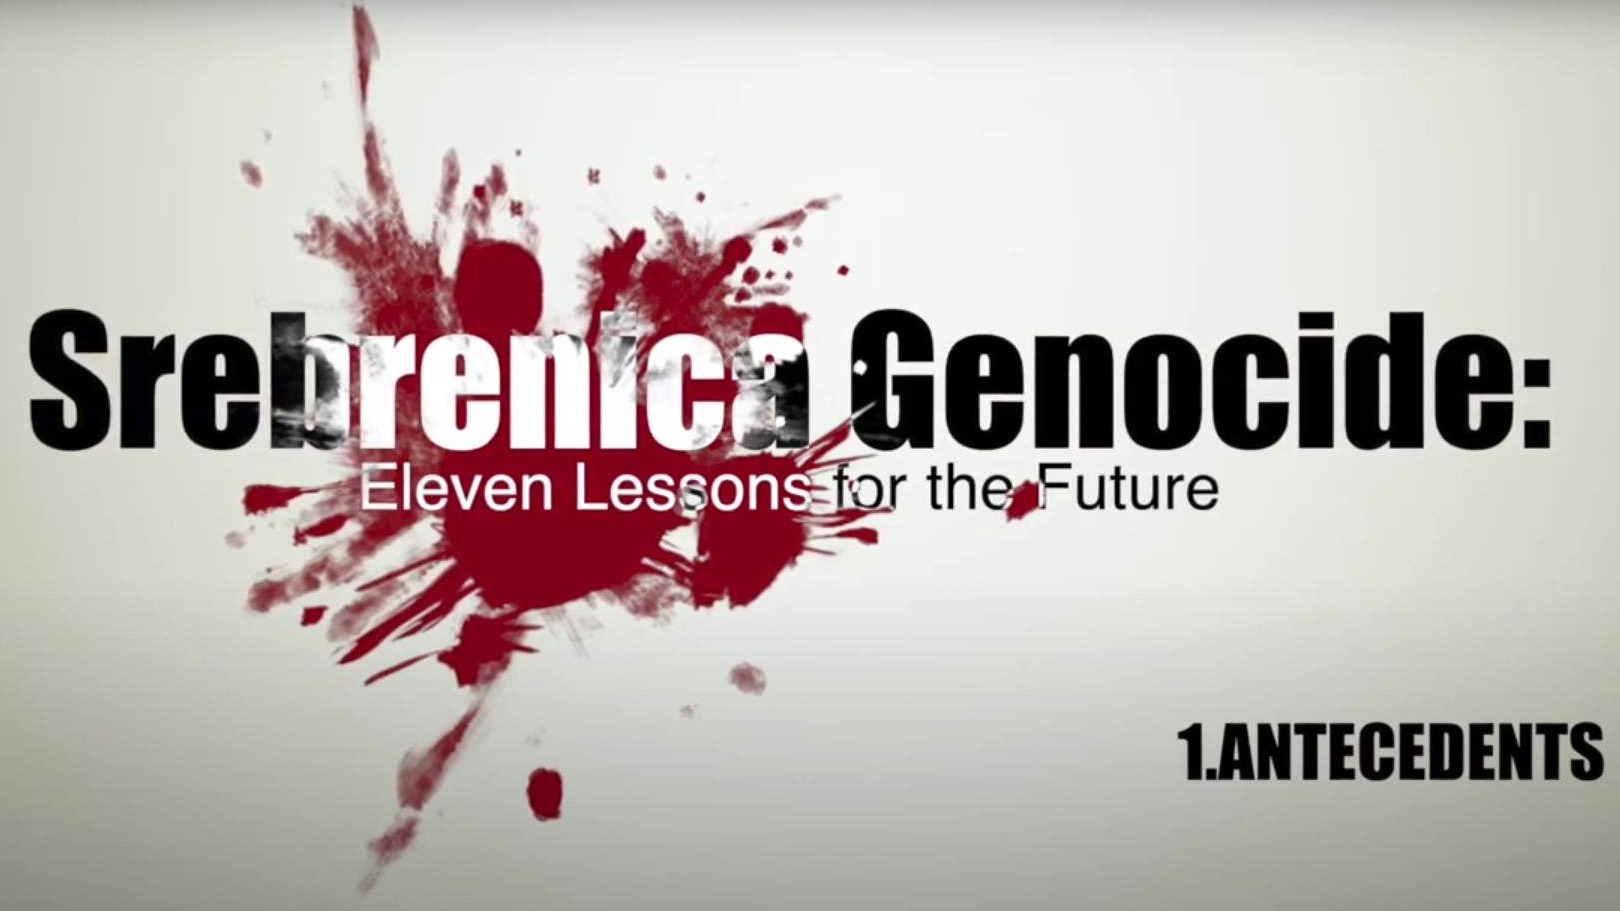 Pokrenut projekat "Srebrenica, sjećamo se" - 11 lekcija za budućnost (Video)